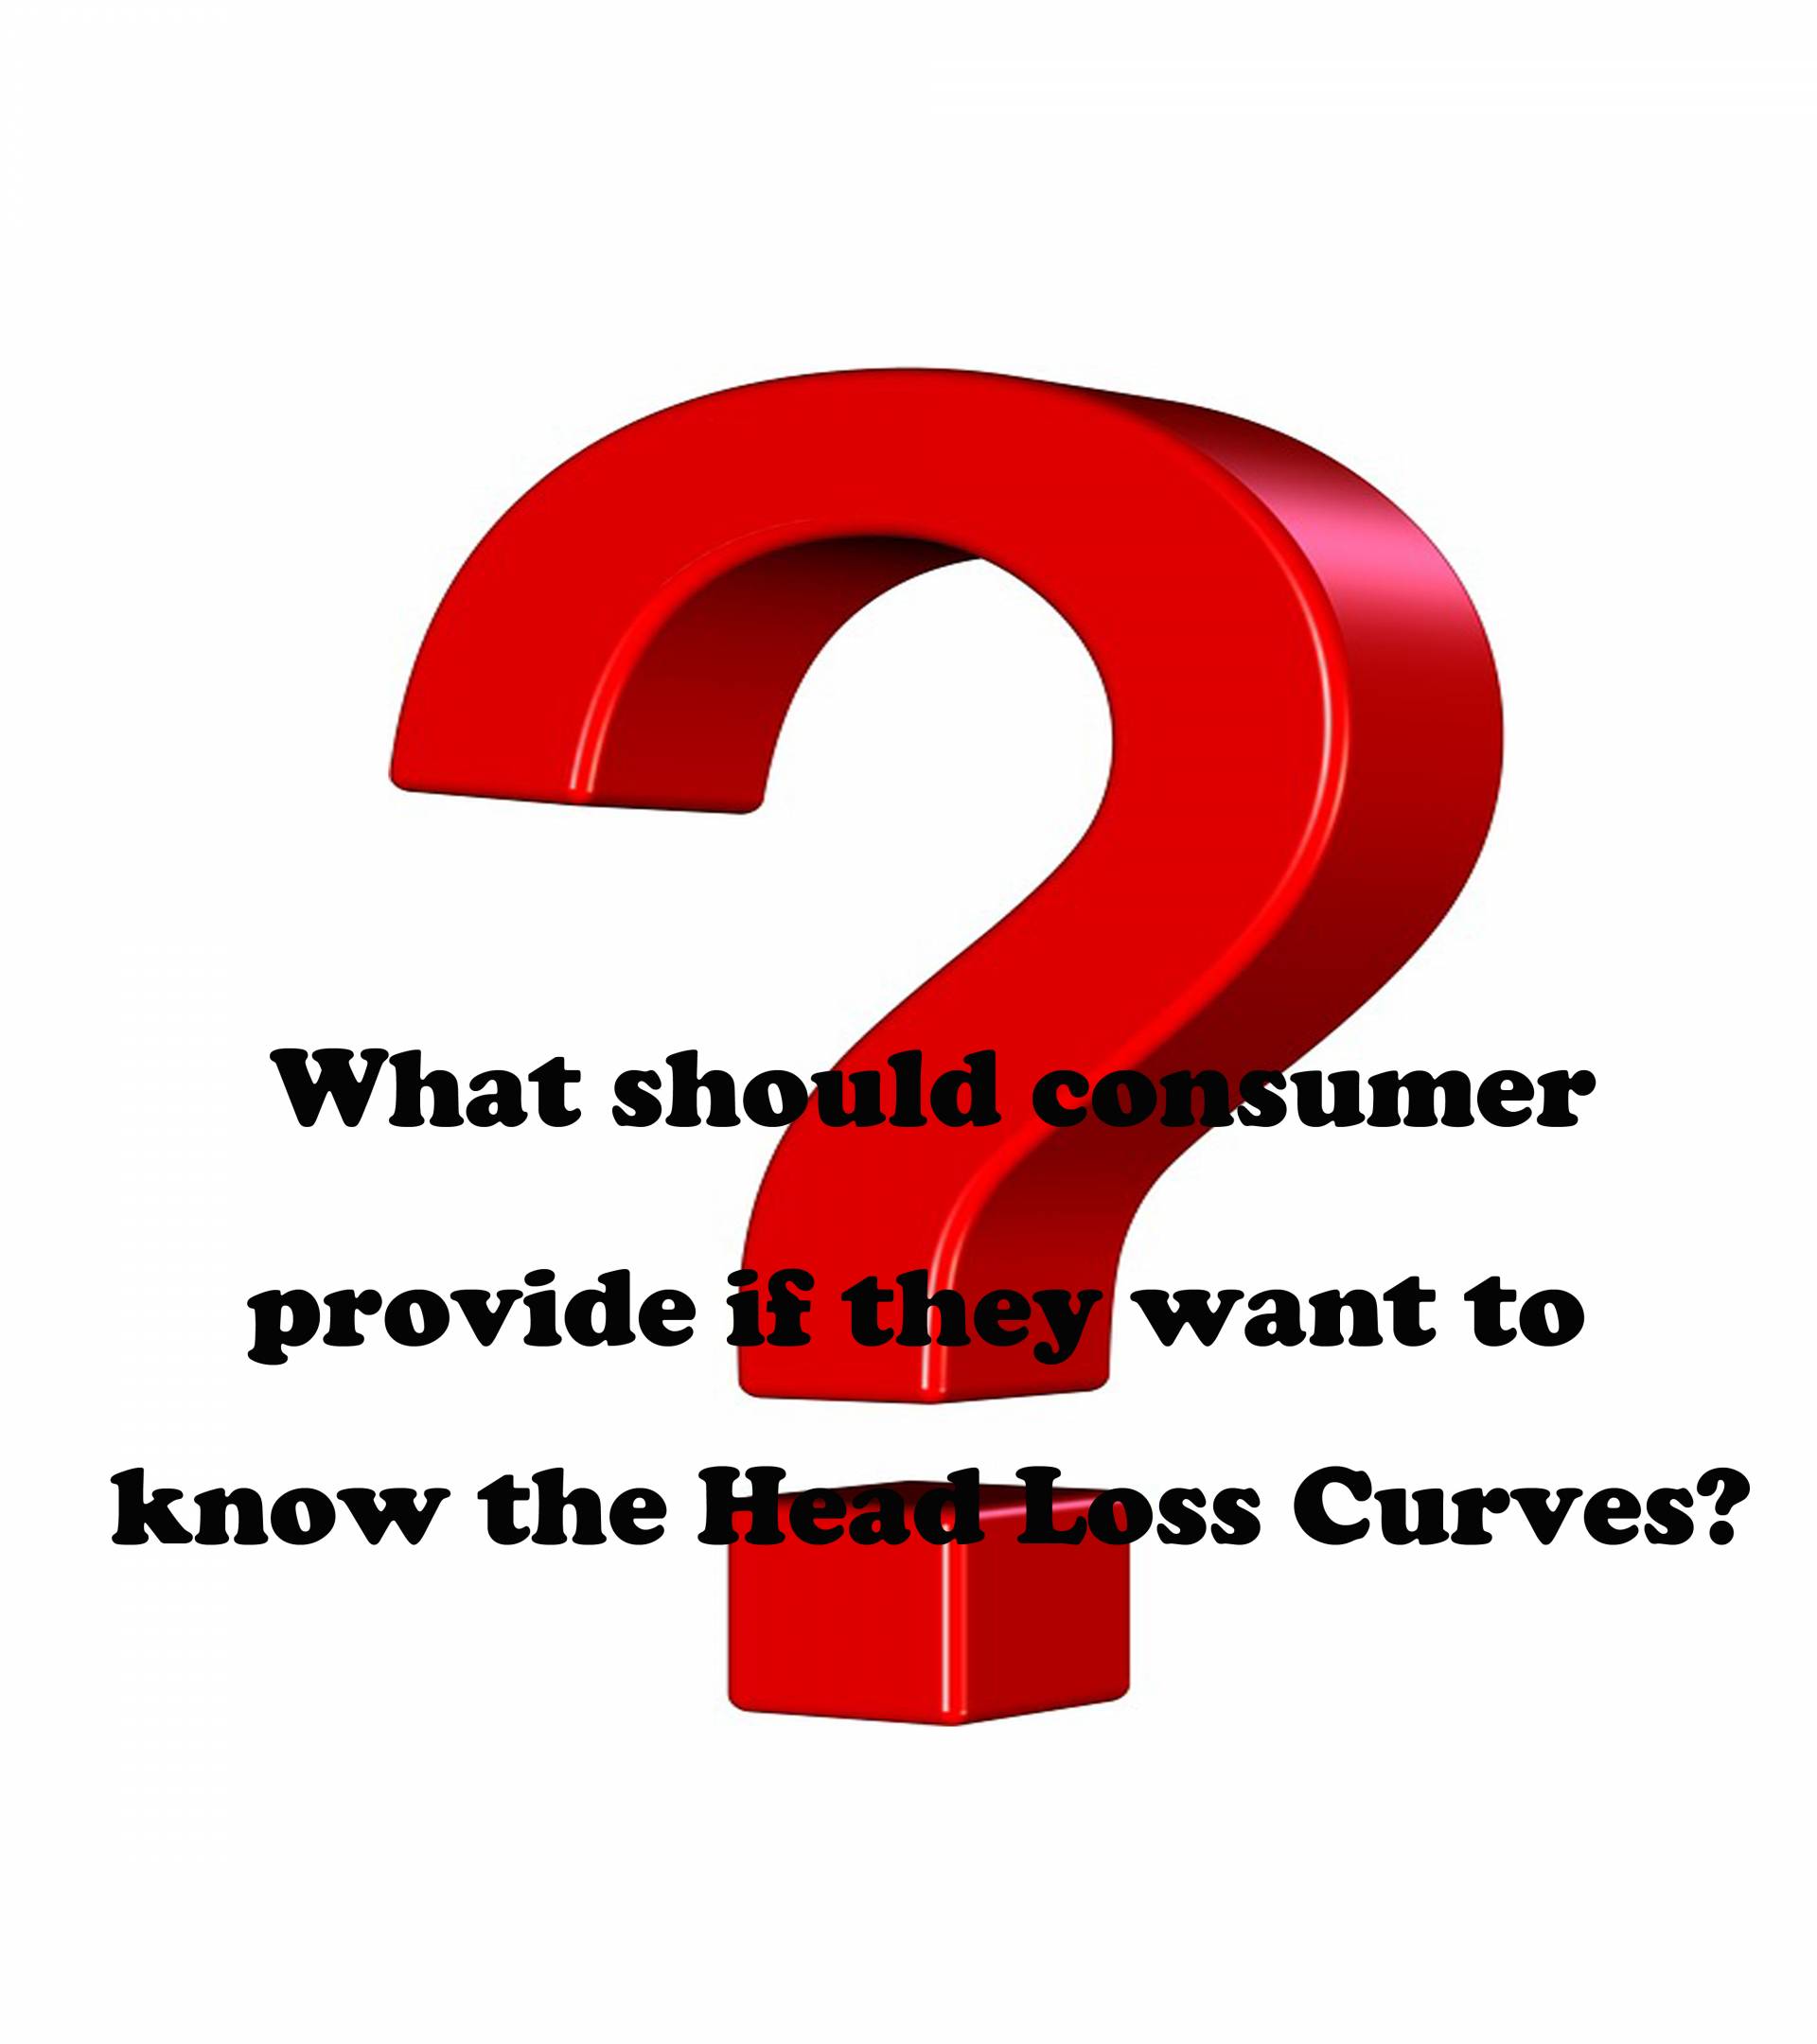 消費者がヘッドロス曲線を知りたい場合、提供する必要があるものは何ですか？